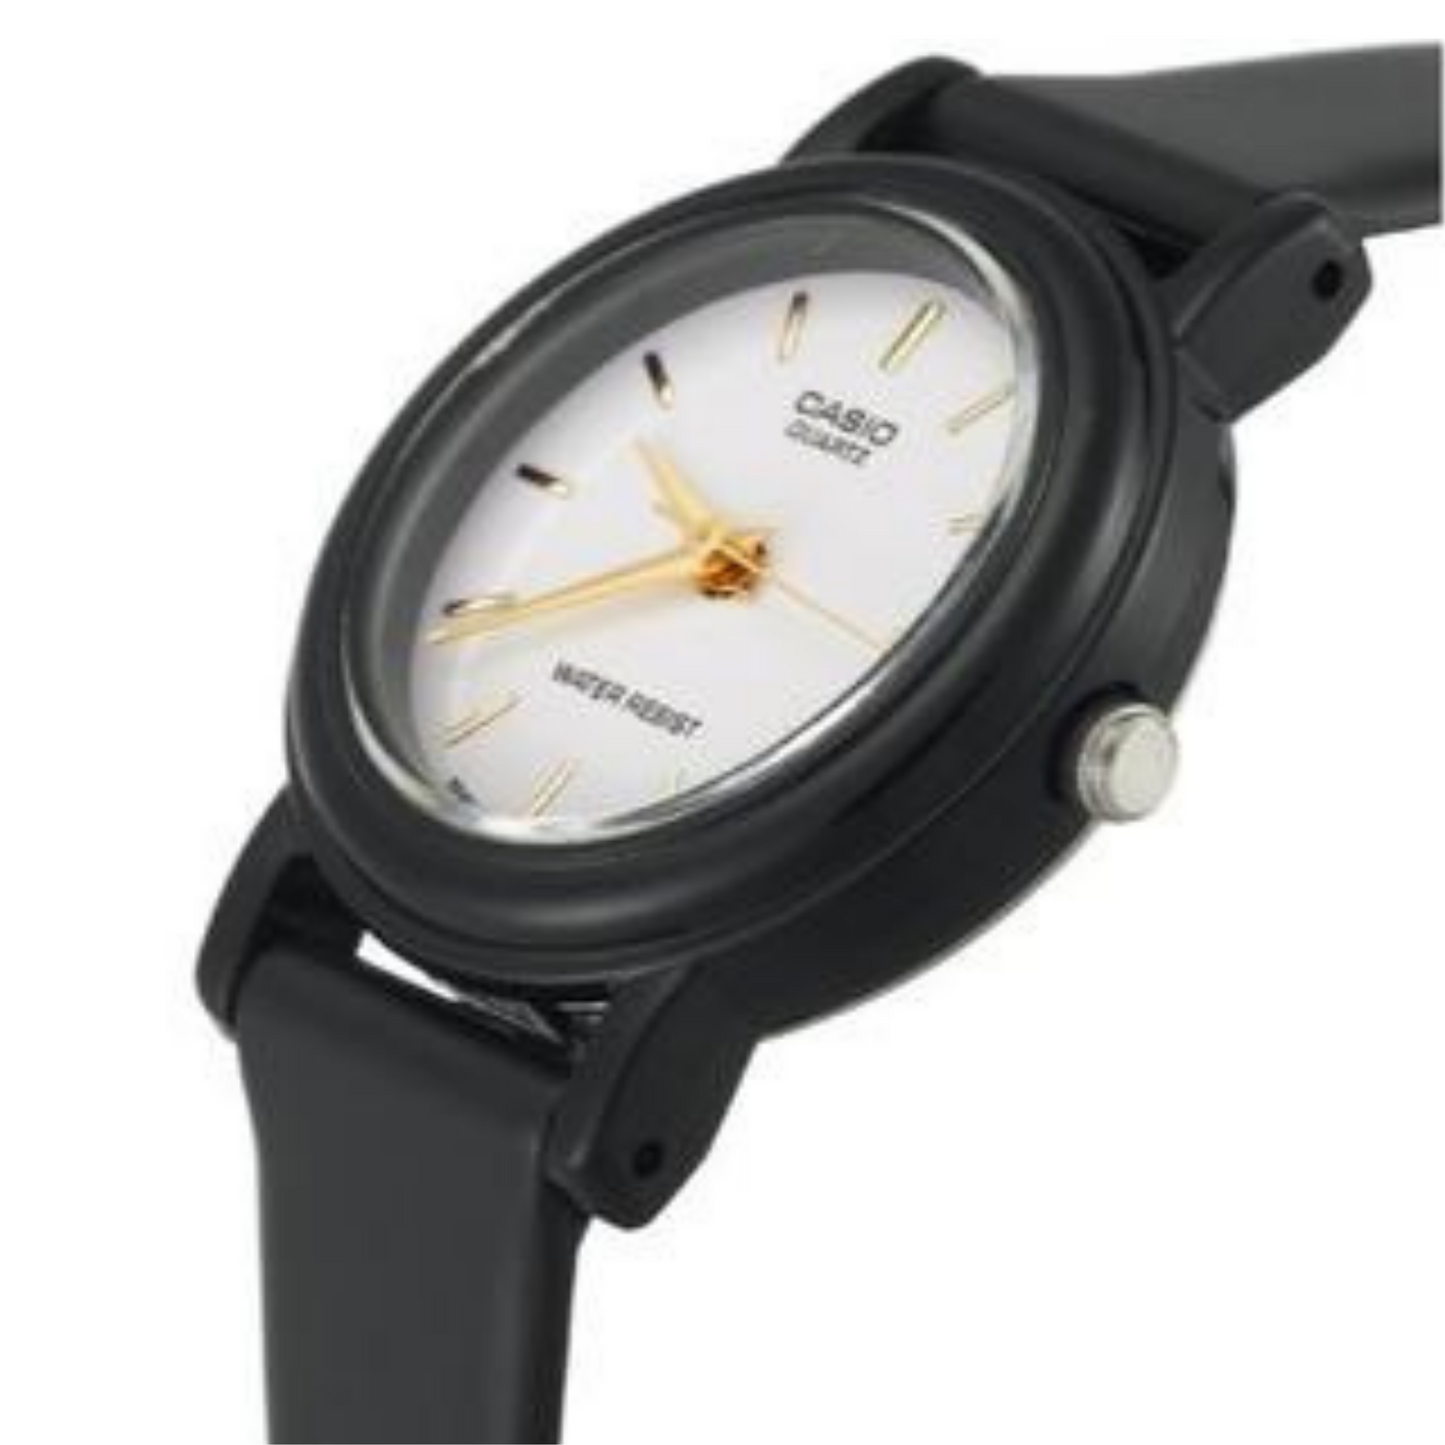 Reloj Casio mujer Modelo LQ-139E-7A